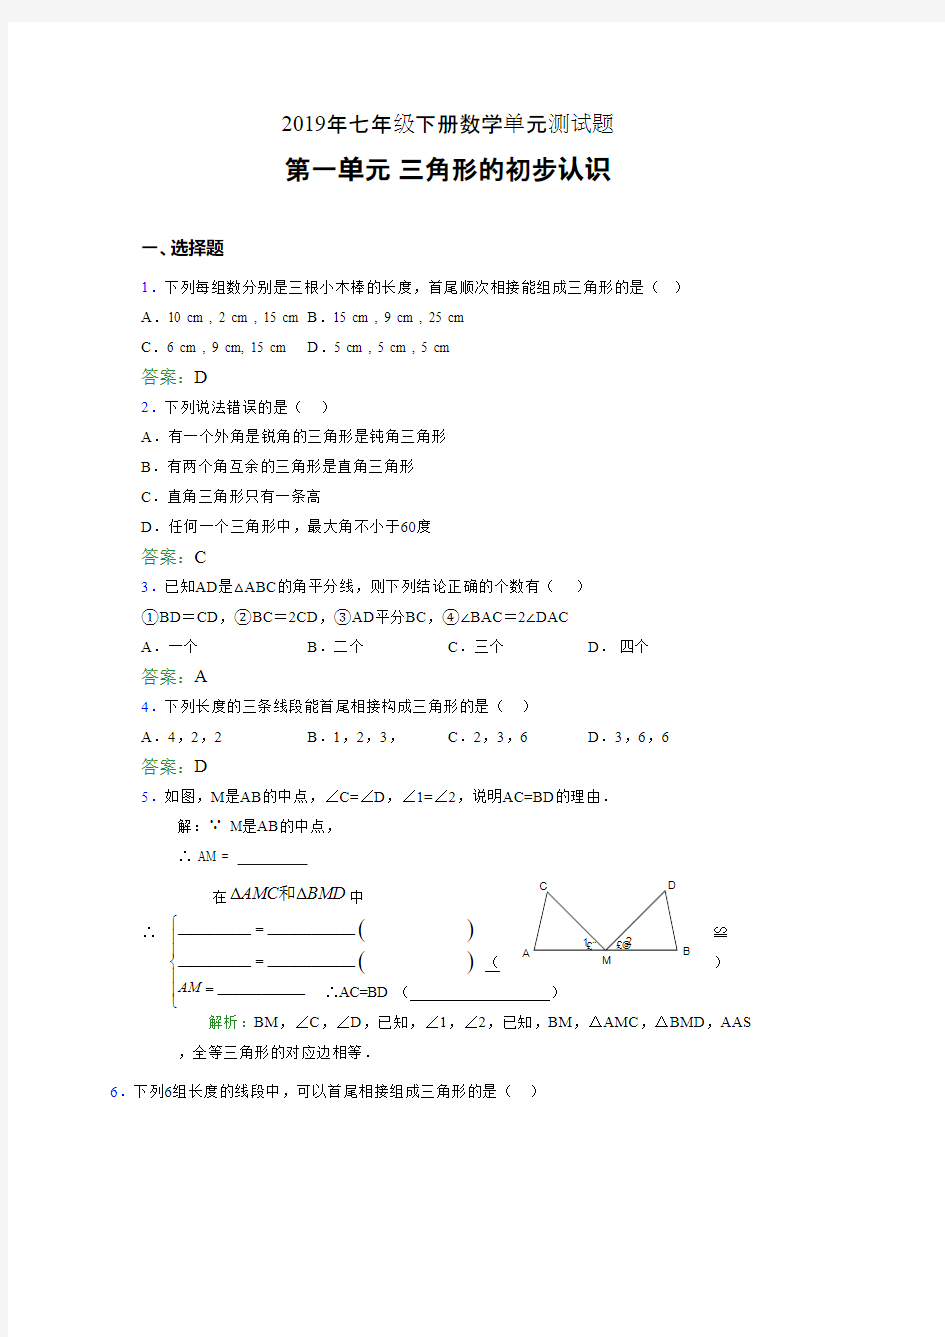 新版精选2019年七年级下册数学单元测试题-三角形的初步认识模拟考试(含答案)